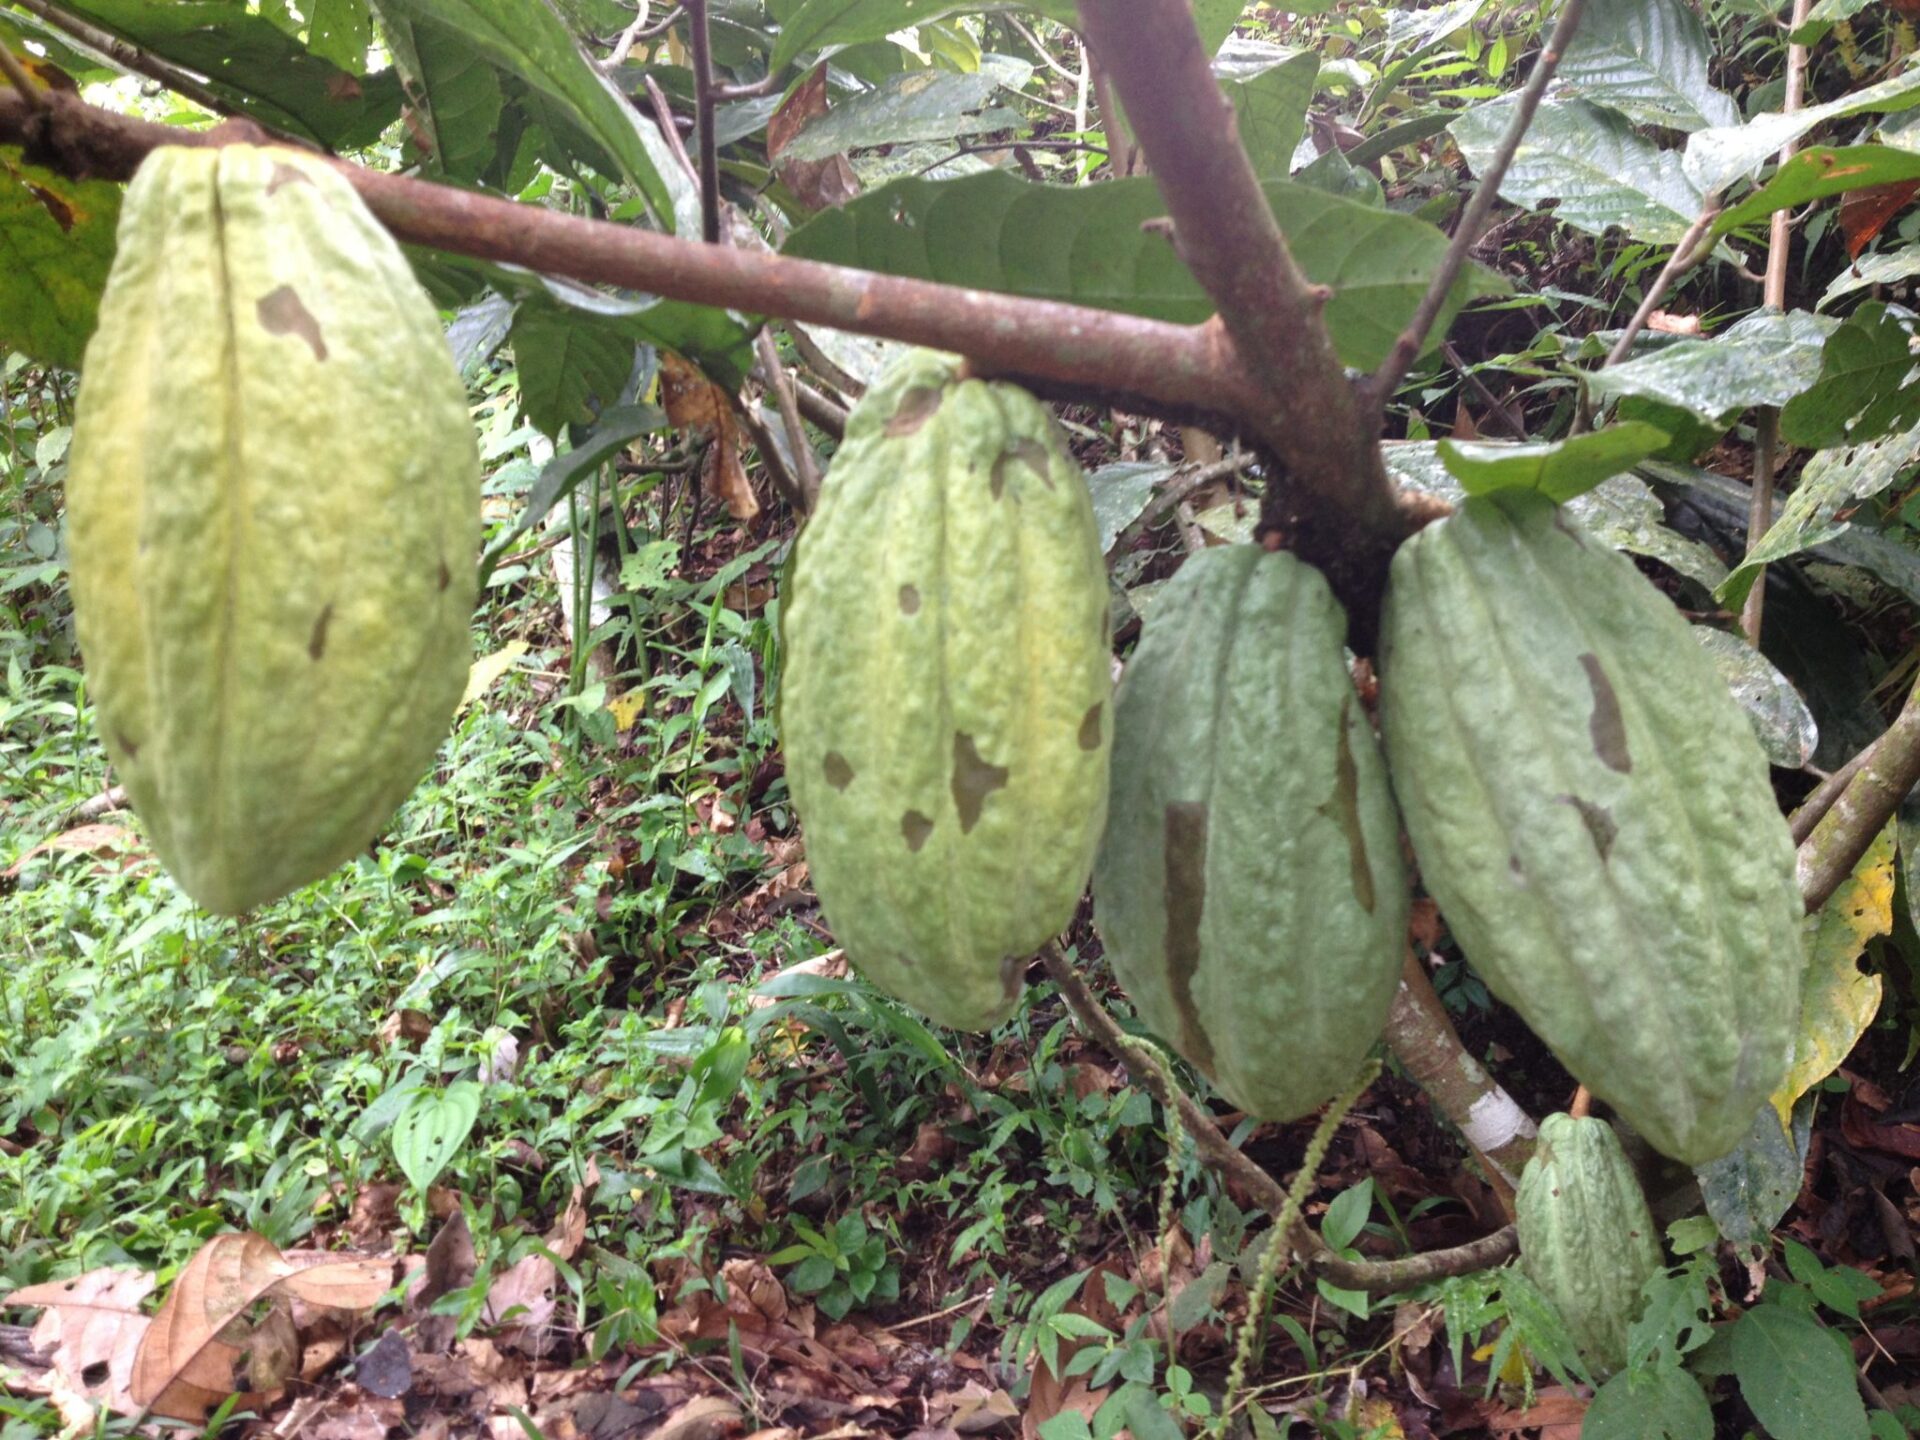 Cacao pods in Ecuador